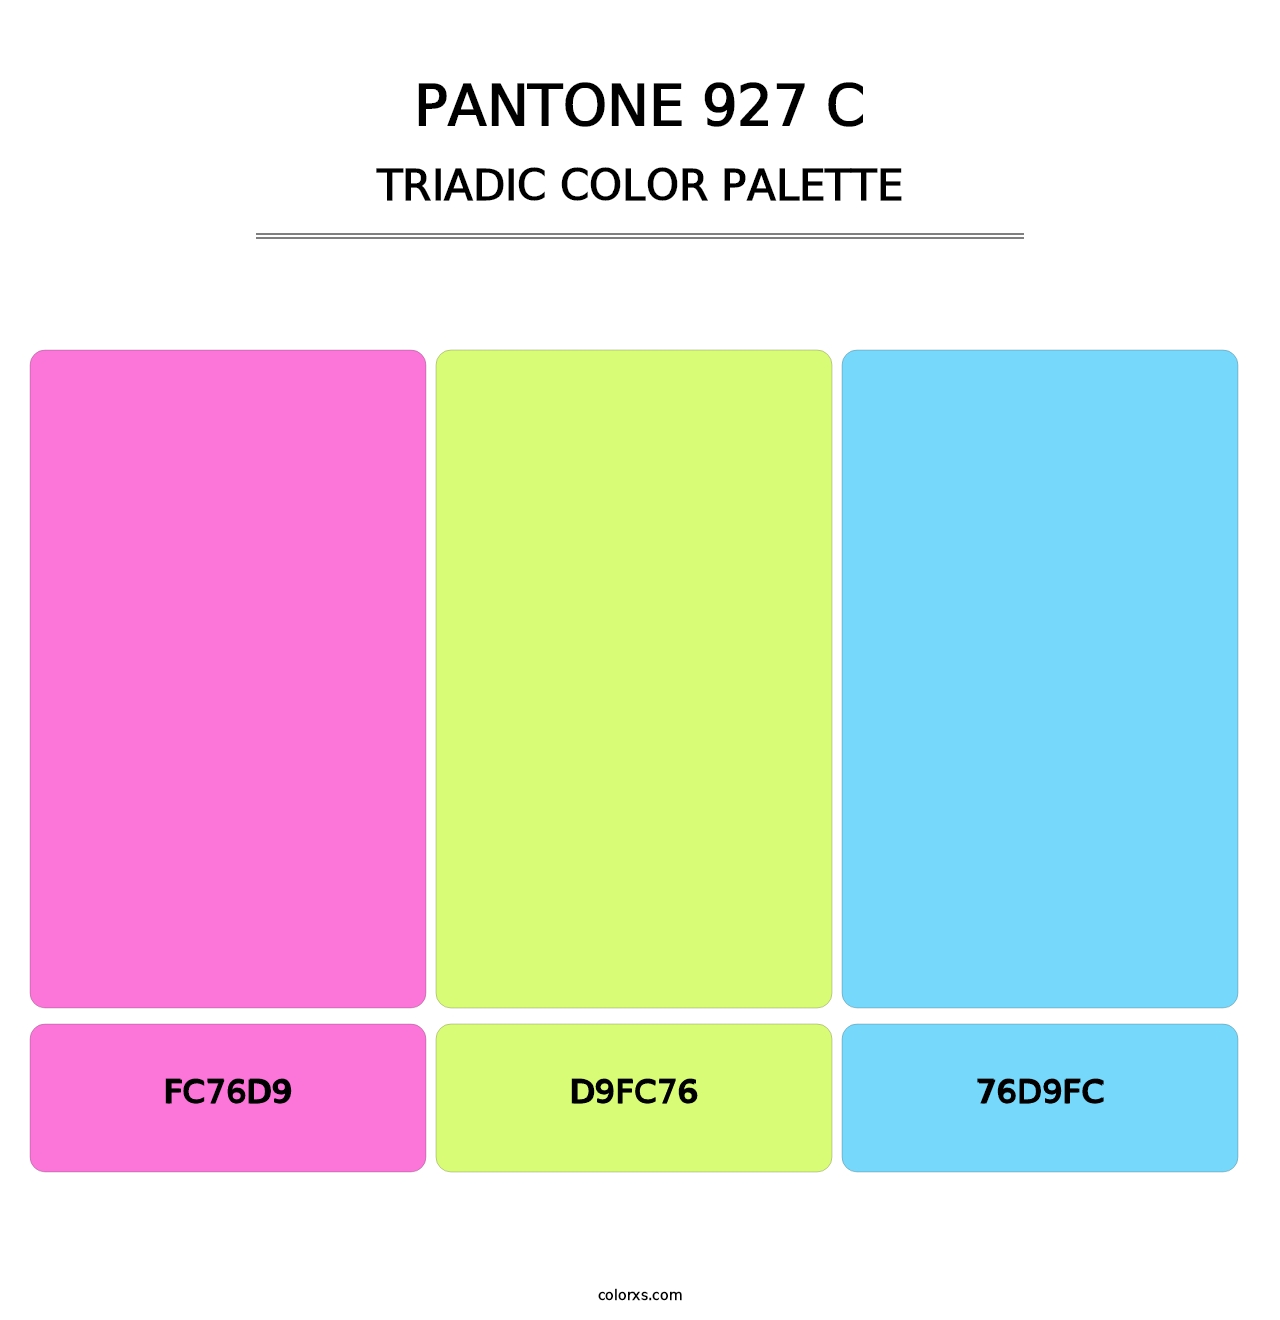 PANTONE 927 C - Triadic Color Palette